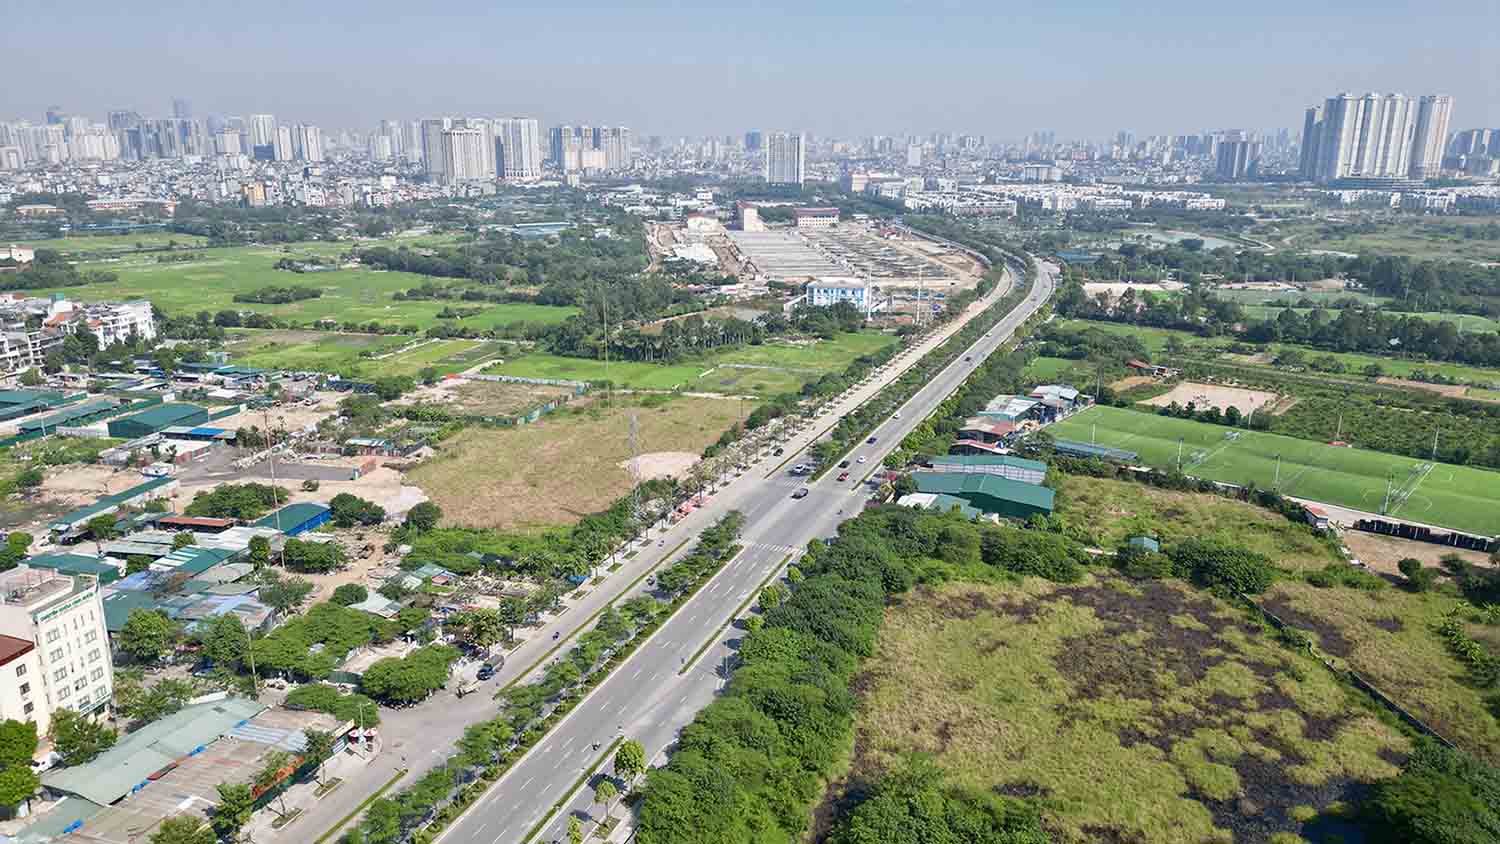 Tuyến đường Nguyễn Xiển - Xa La hay còn gọi là Đại lộ Chu Văn An đã được thông xe vào cuối tháng 1.2020 vừa qua sau 6 năm thi công. Tuyến đường có chiều dài 2,5km với điểm đầu giao với đường Vành đai 3 (đường Nguyễn Xiển), điểm cuối nối với đường 70.